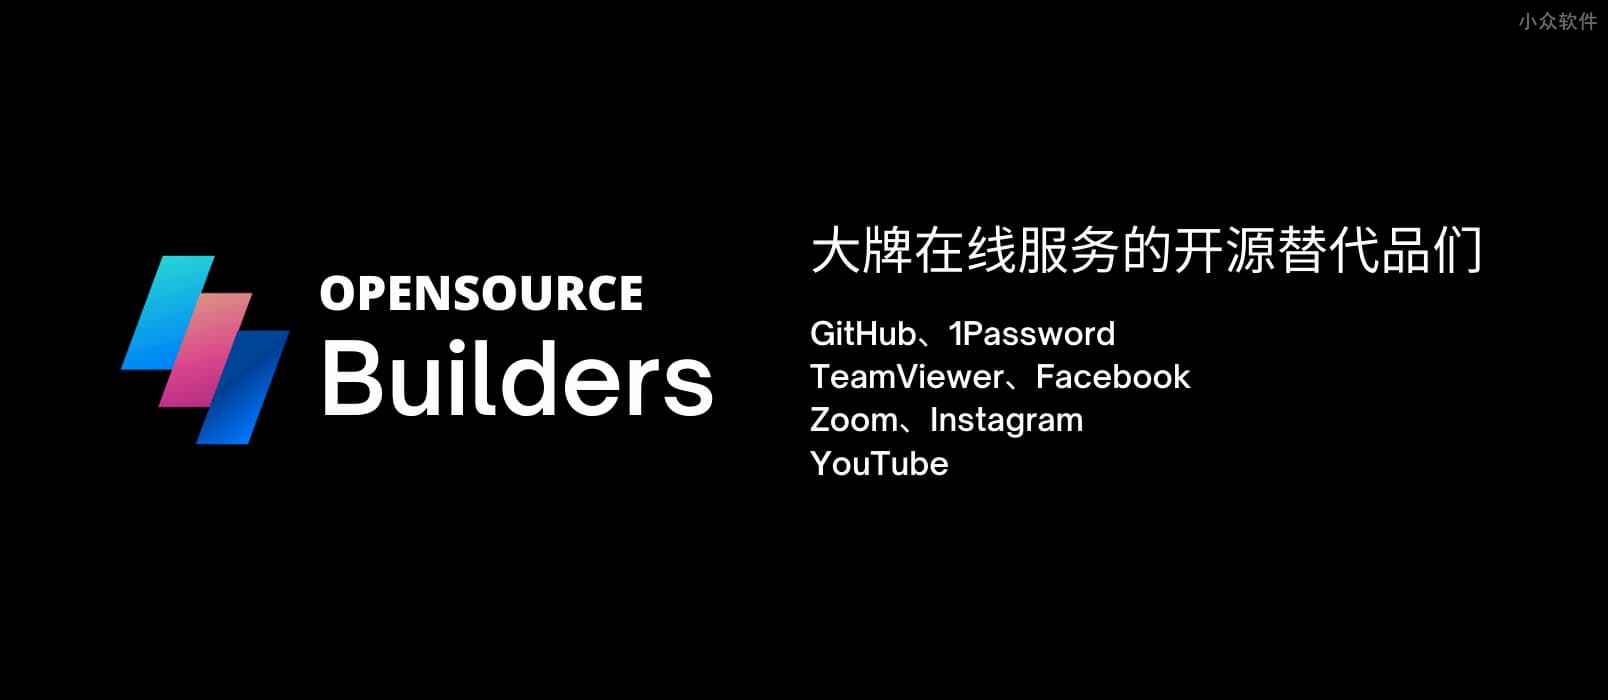 Opensource Builders - GitHub、1Password、TeamViewer、Facebook、Zoom、Instagram 等大牌的开源替代品们 1